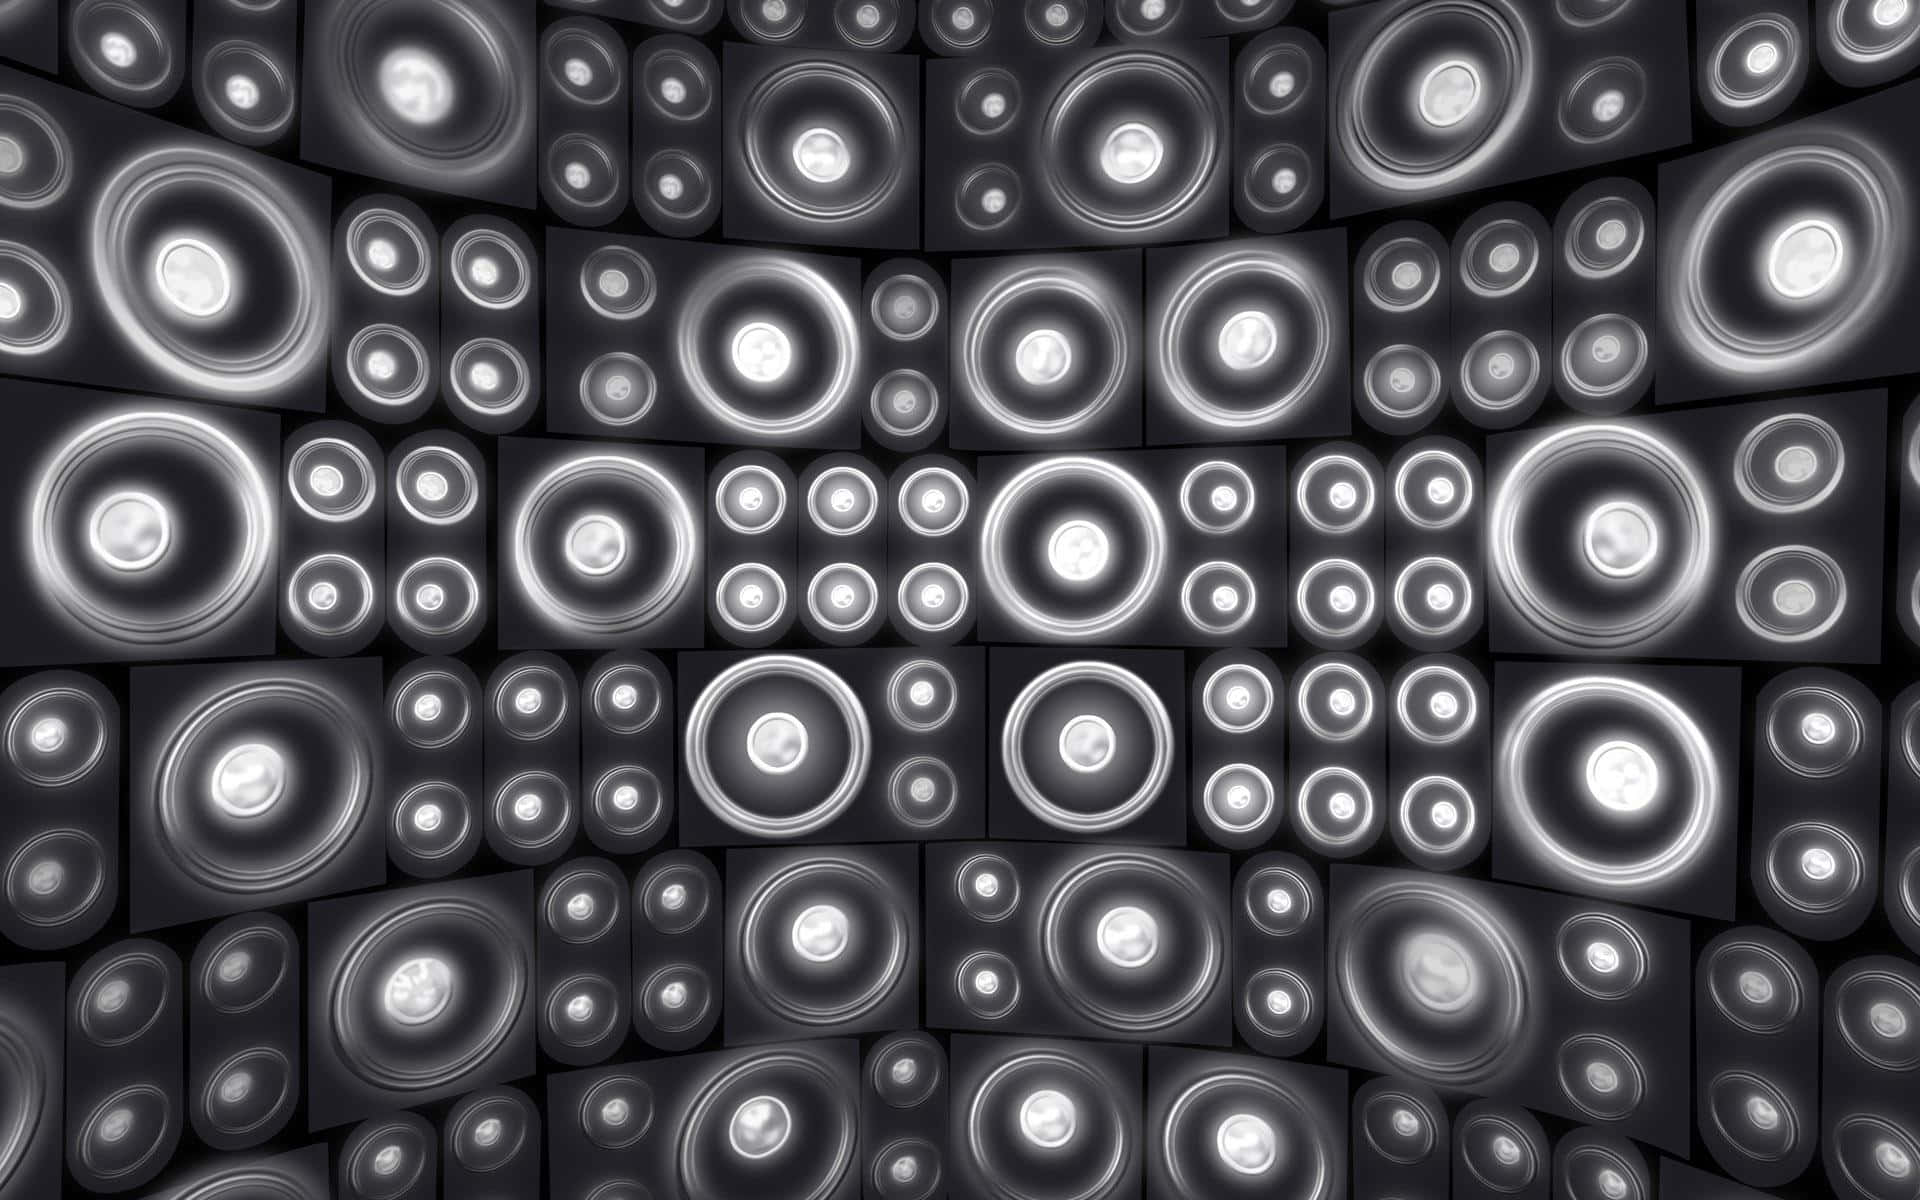 Wallof Speakers Pattern.jpg Background